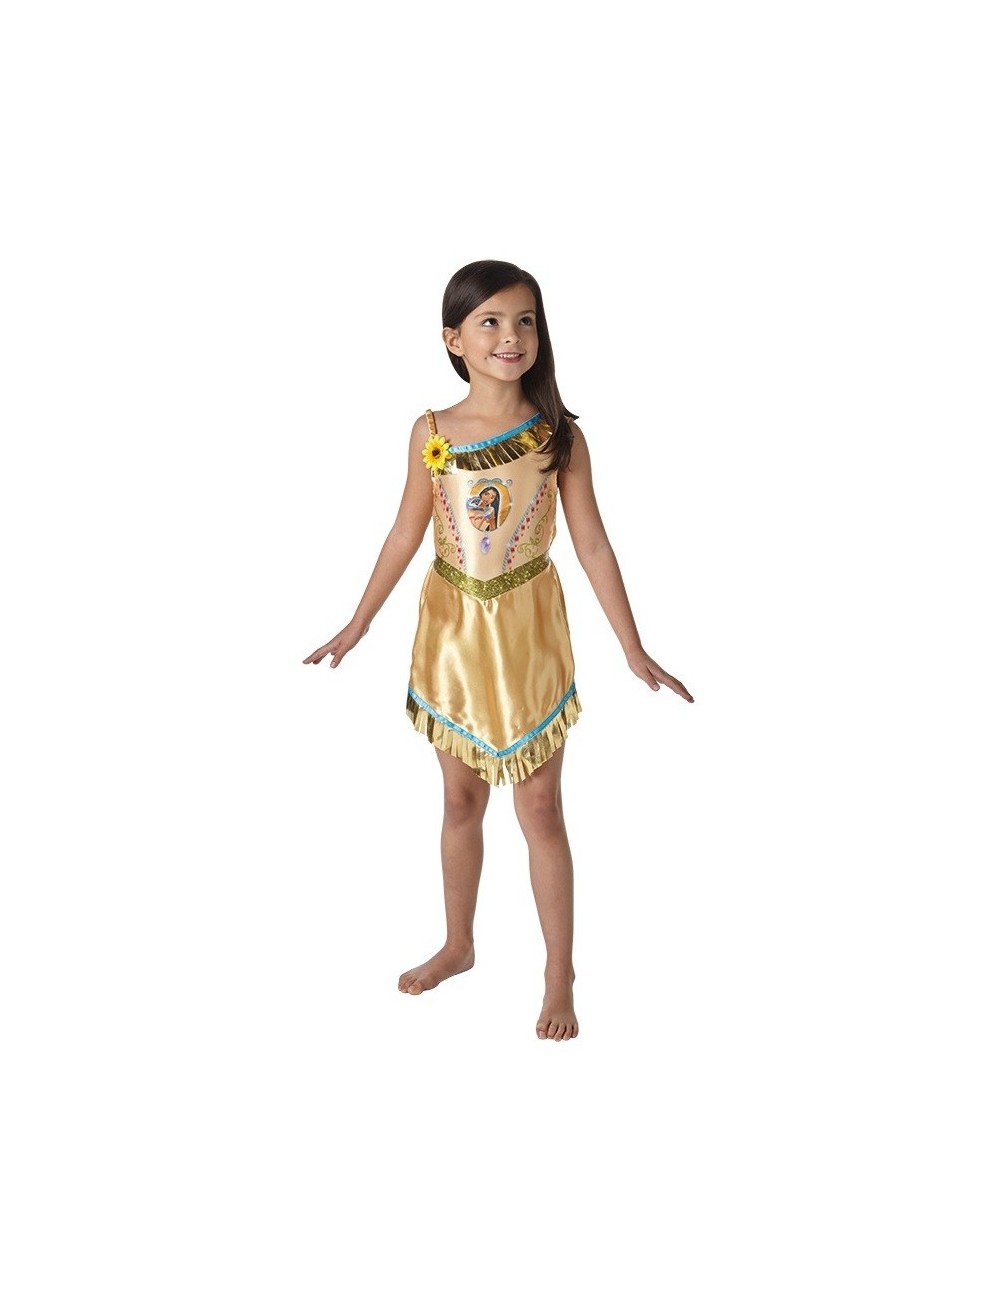 Costum indianca Pocahontas copii, Rubies